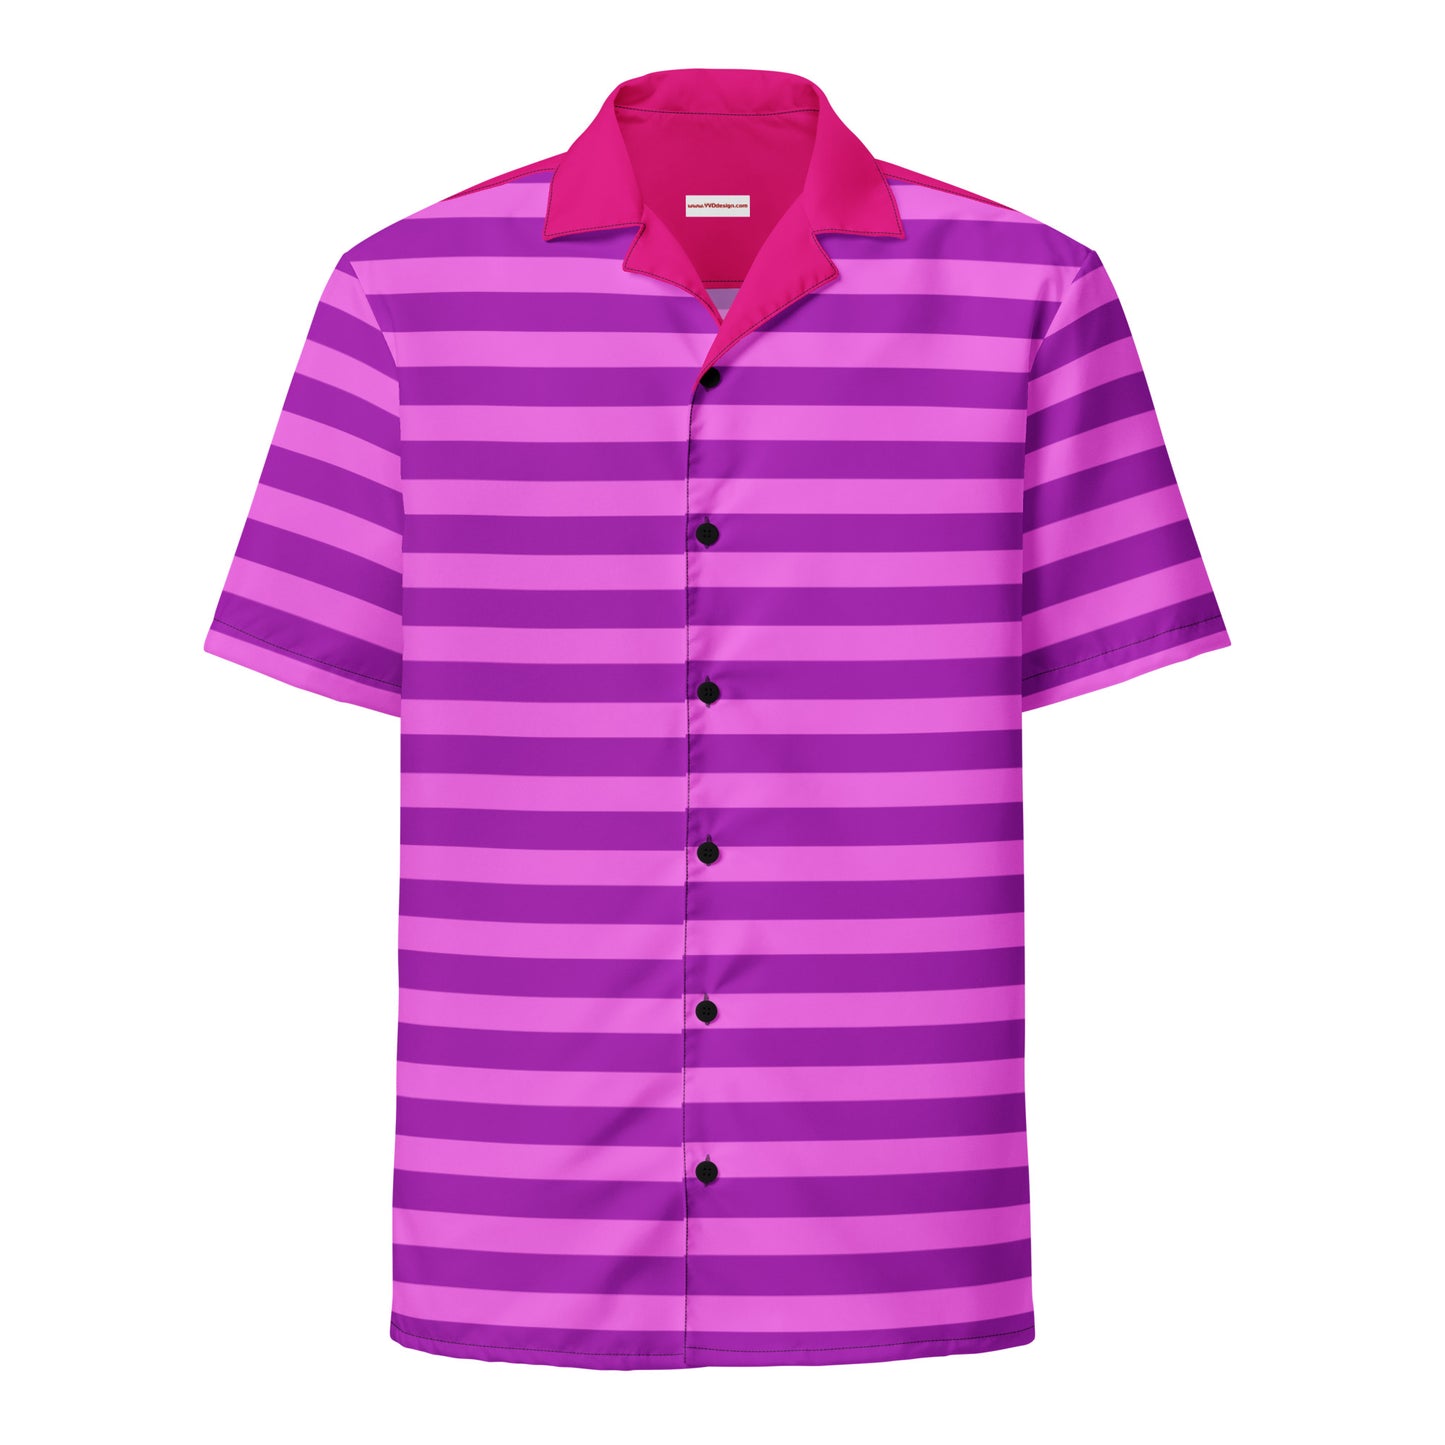 Roupa de camisa listrada rosa / camisa de manga curta com botões